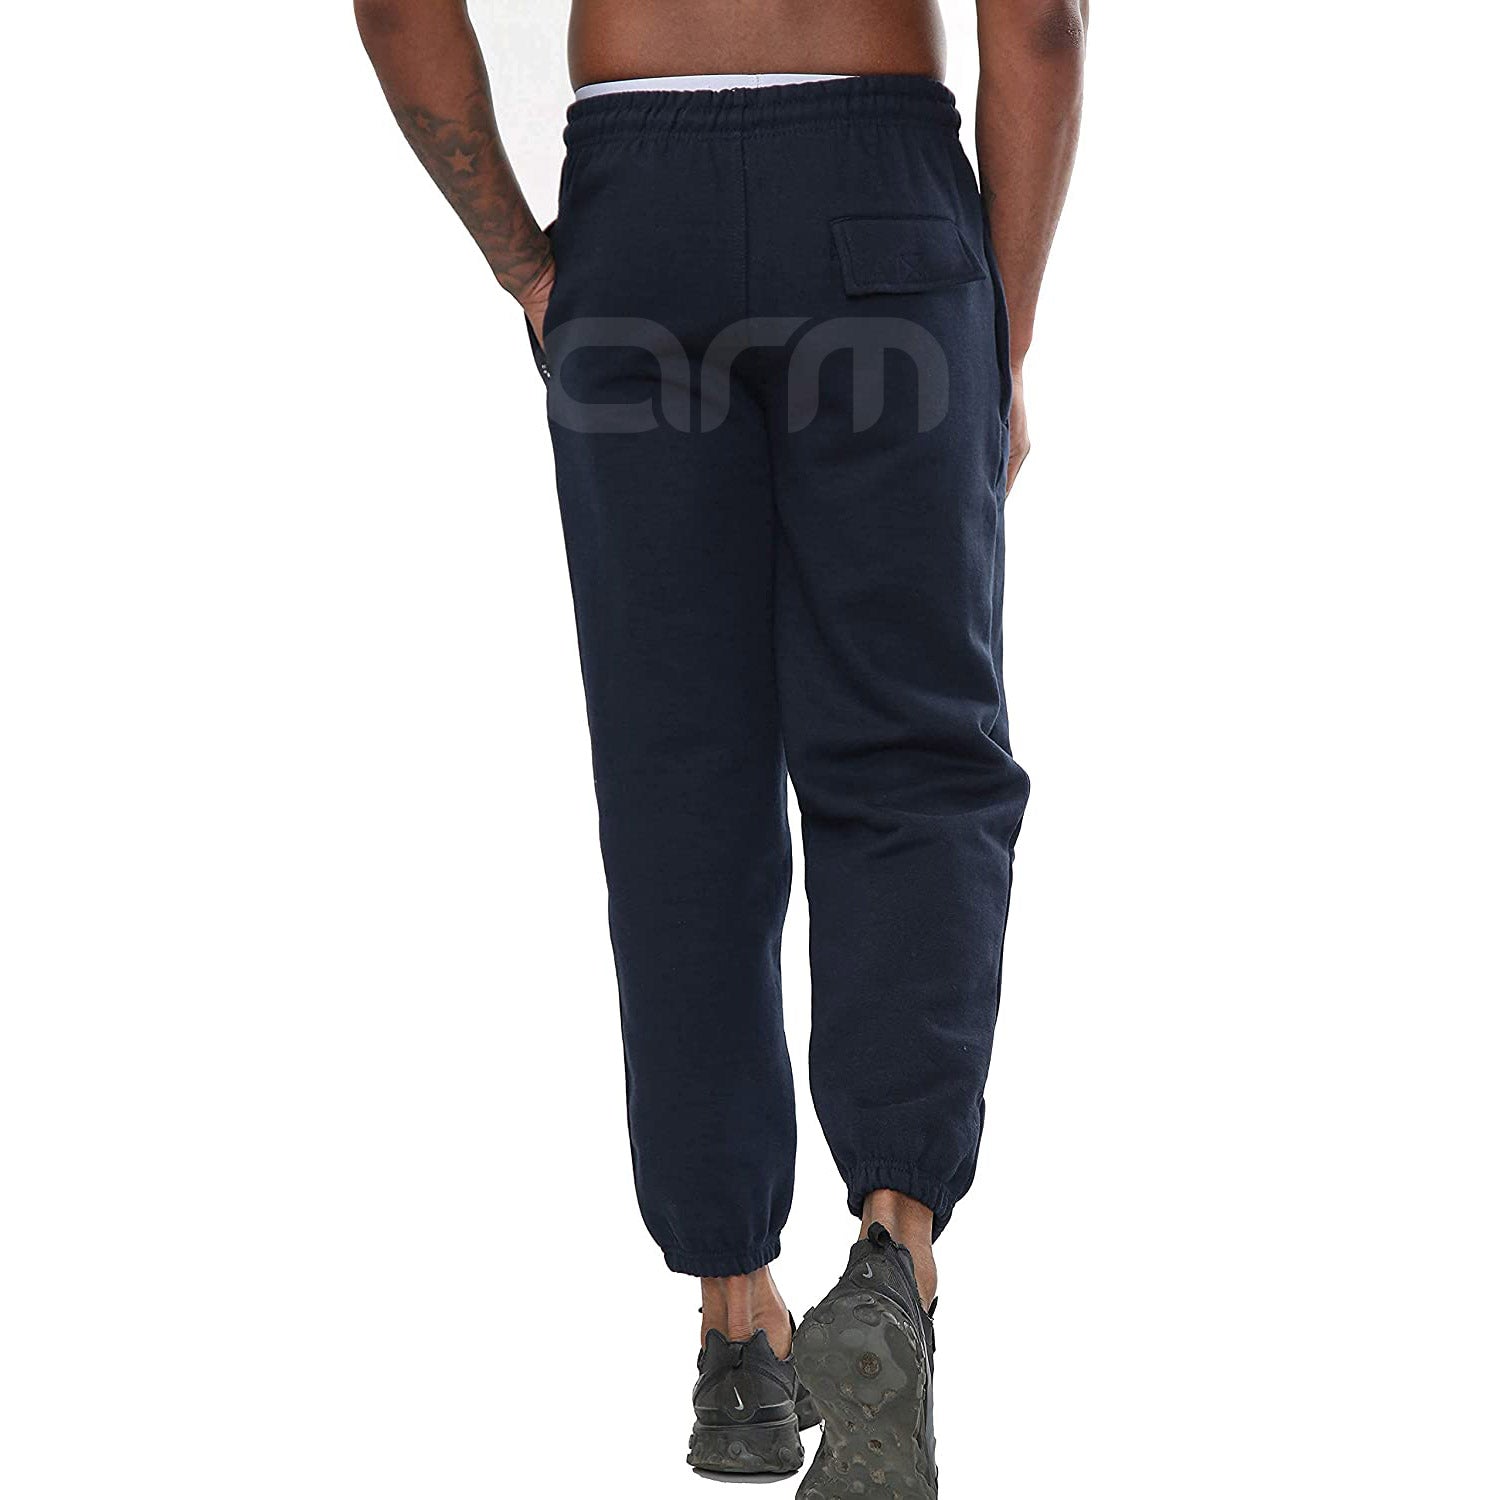 Basic Navy Blue 3 Pocket Jogging Pant